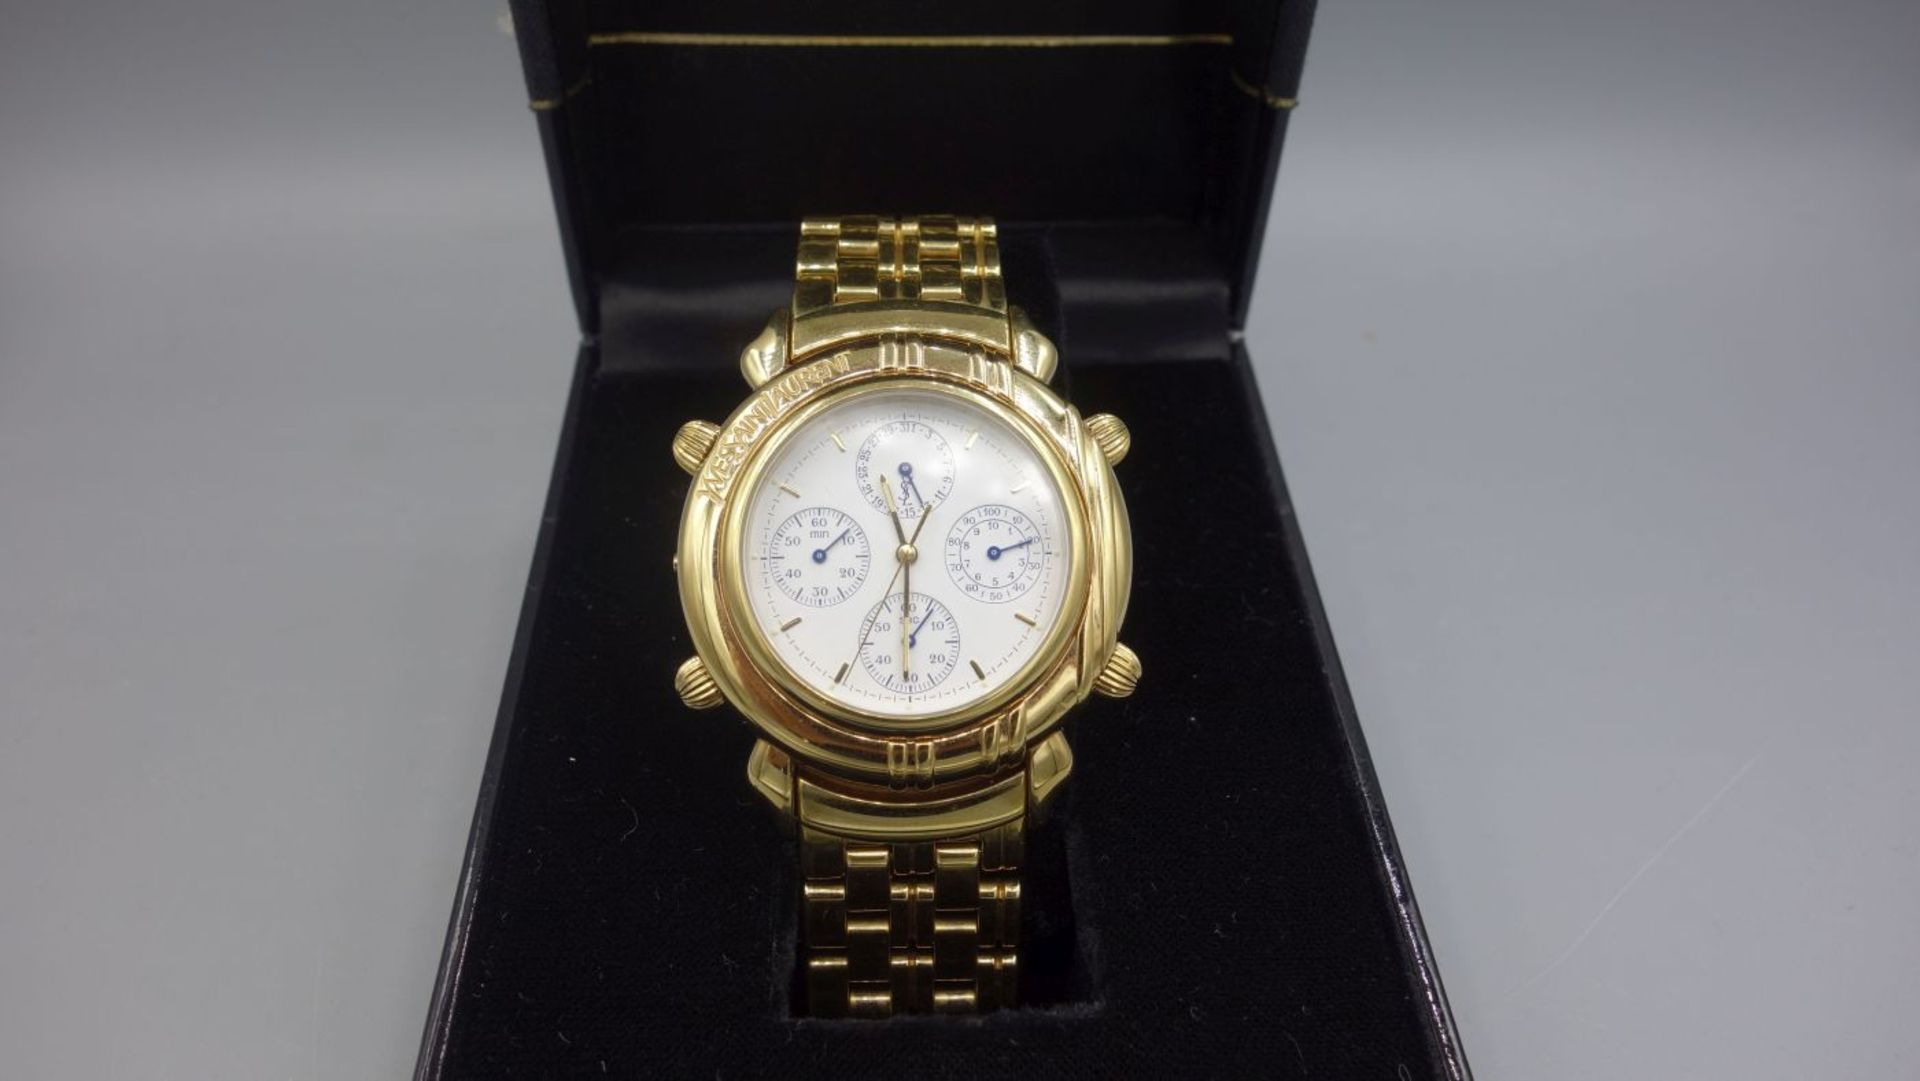 ARMBANDUHR / CHRONOGRAPH - YVES SAINT LAURENT / wristwatch, Quartz. Uhr aus der Yves Saint Laurent